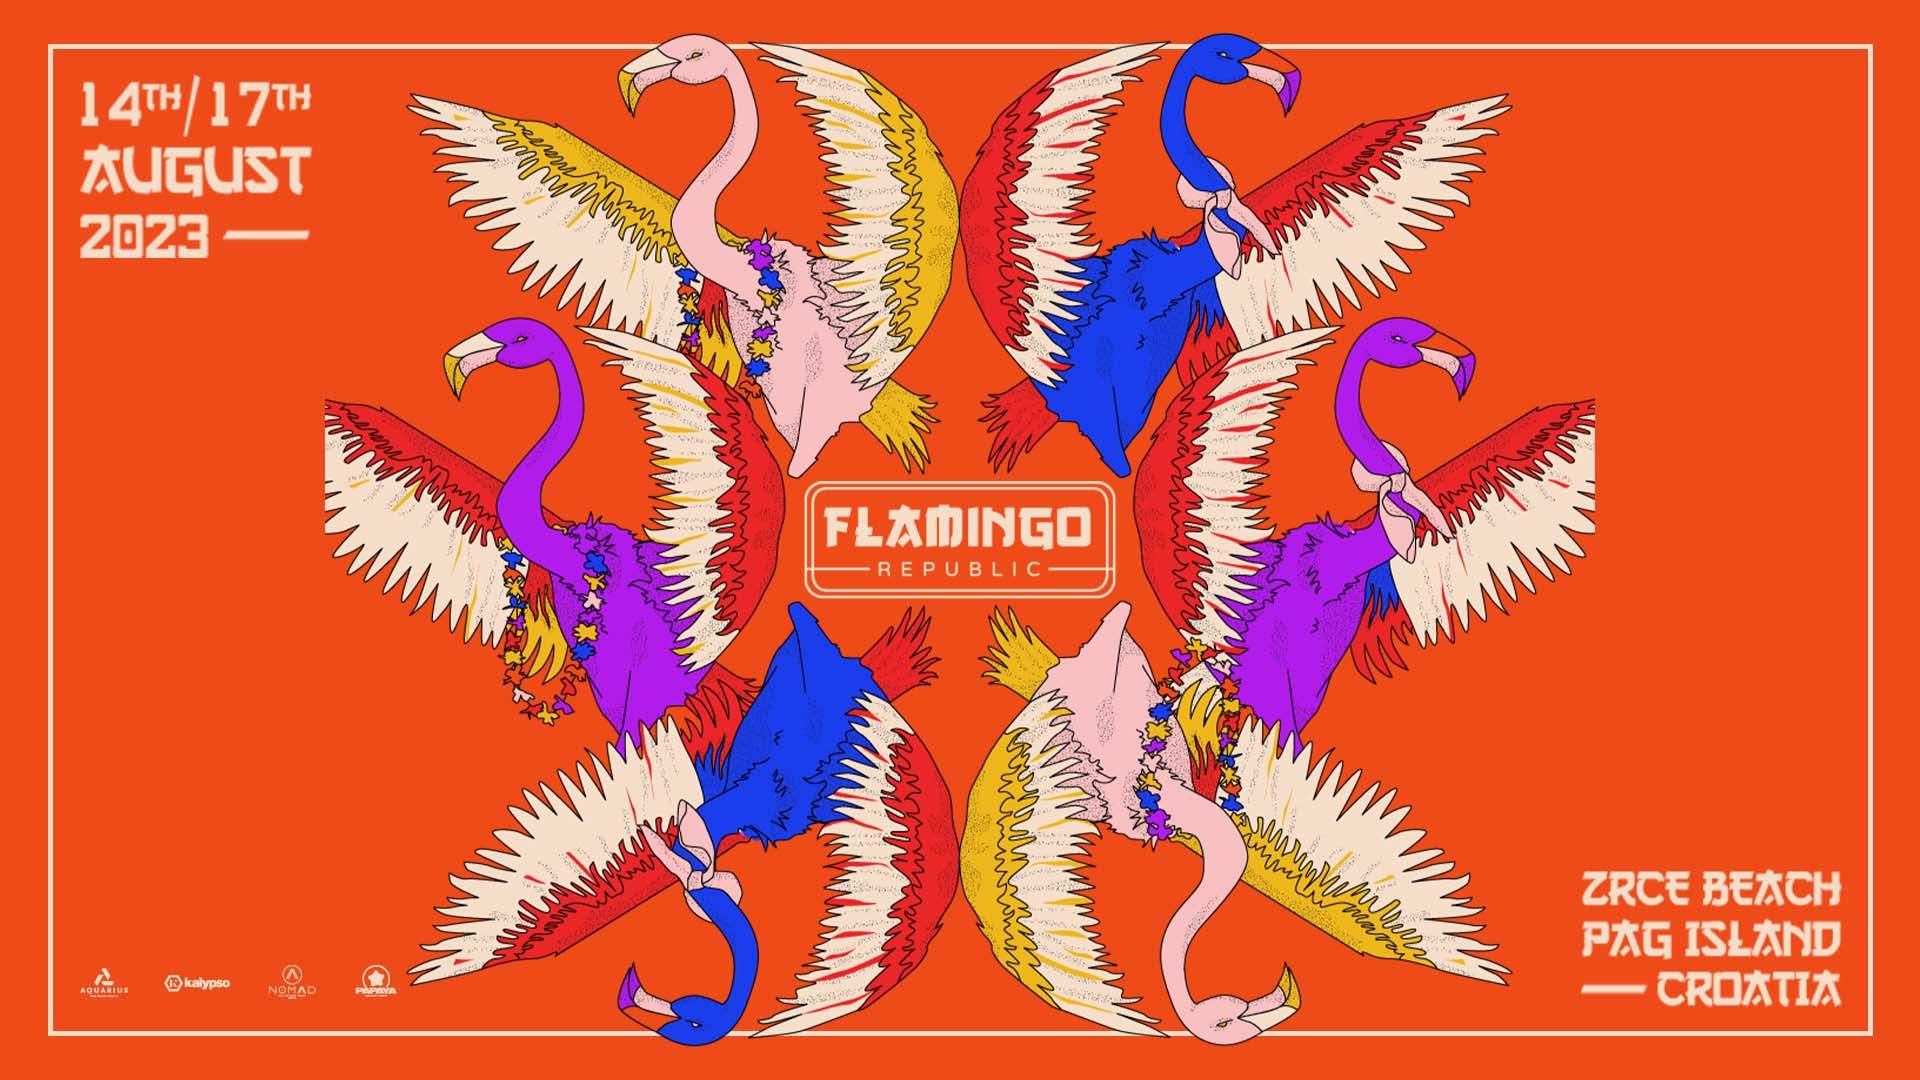 Flamingo Republic - Página frontal